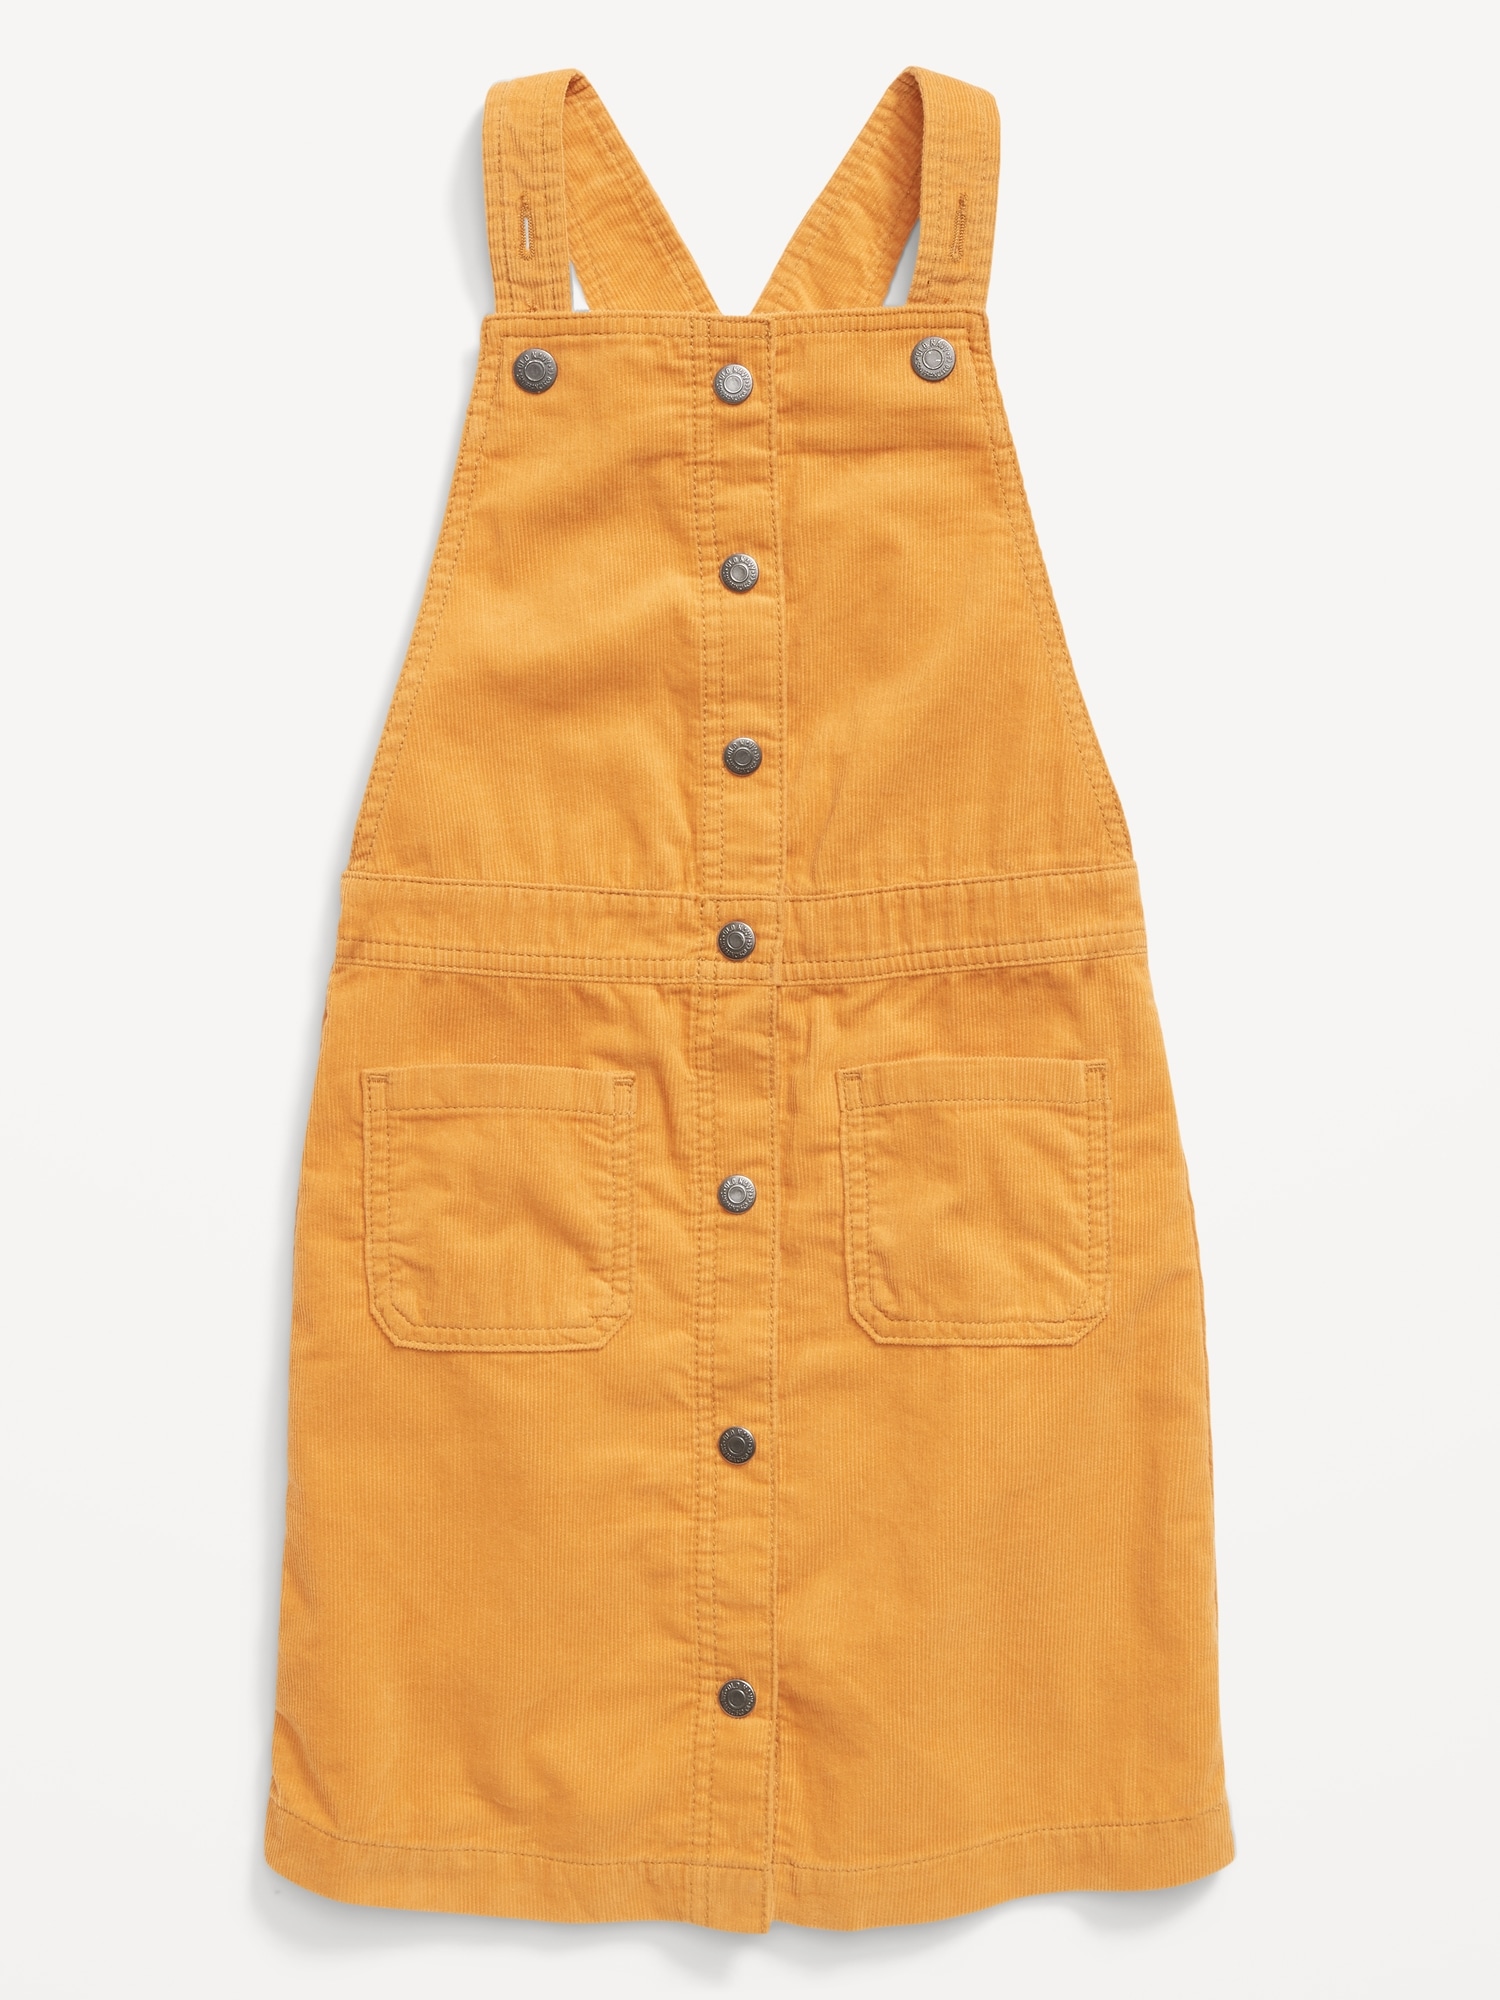 Art Class Overall Dress Denim Girls Size Small 6/6x – Shop Thrift World